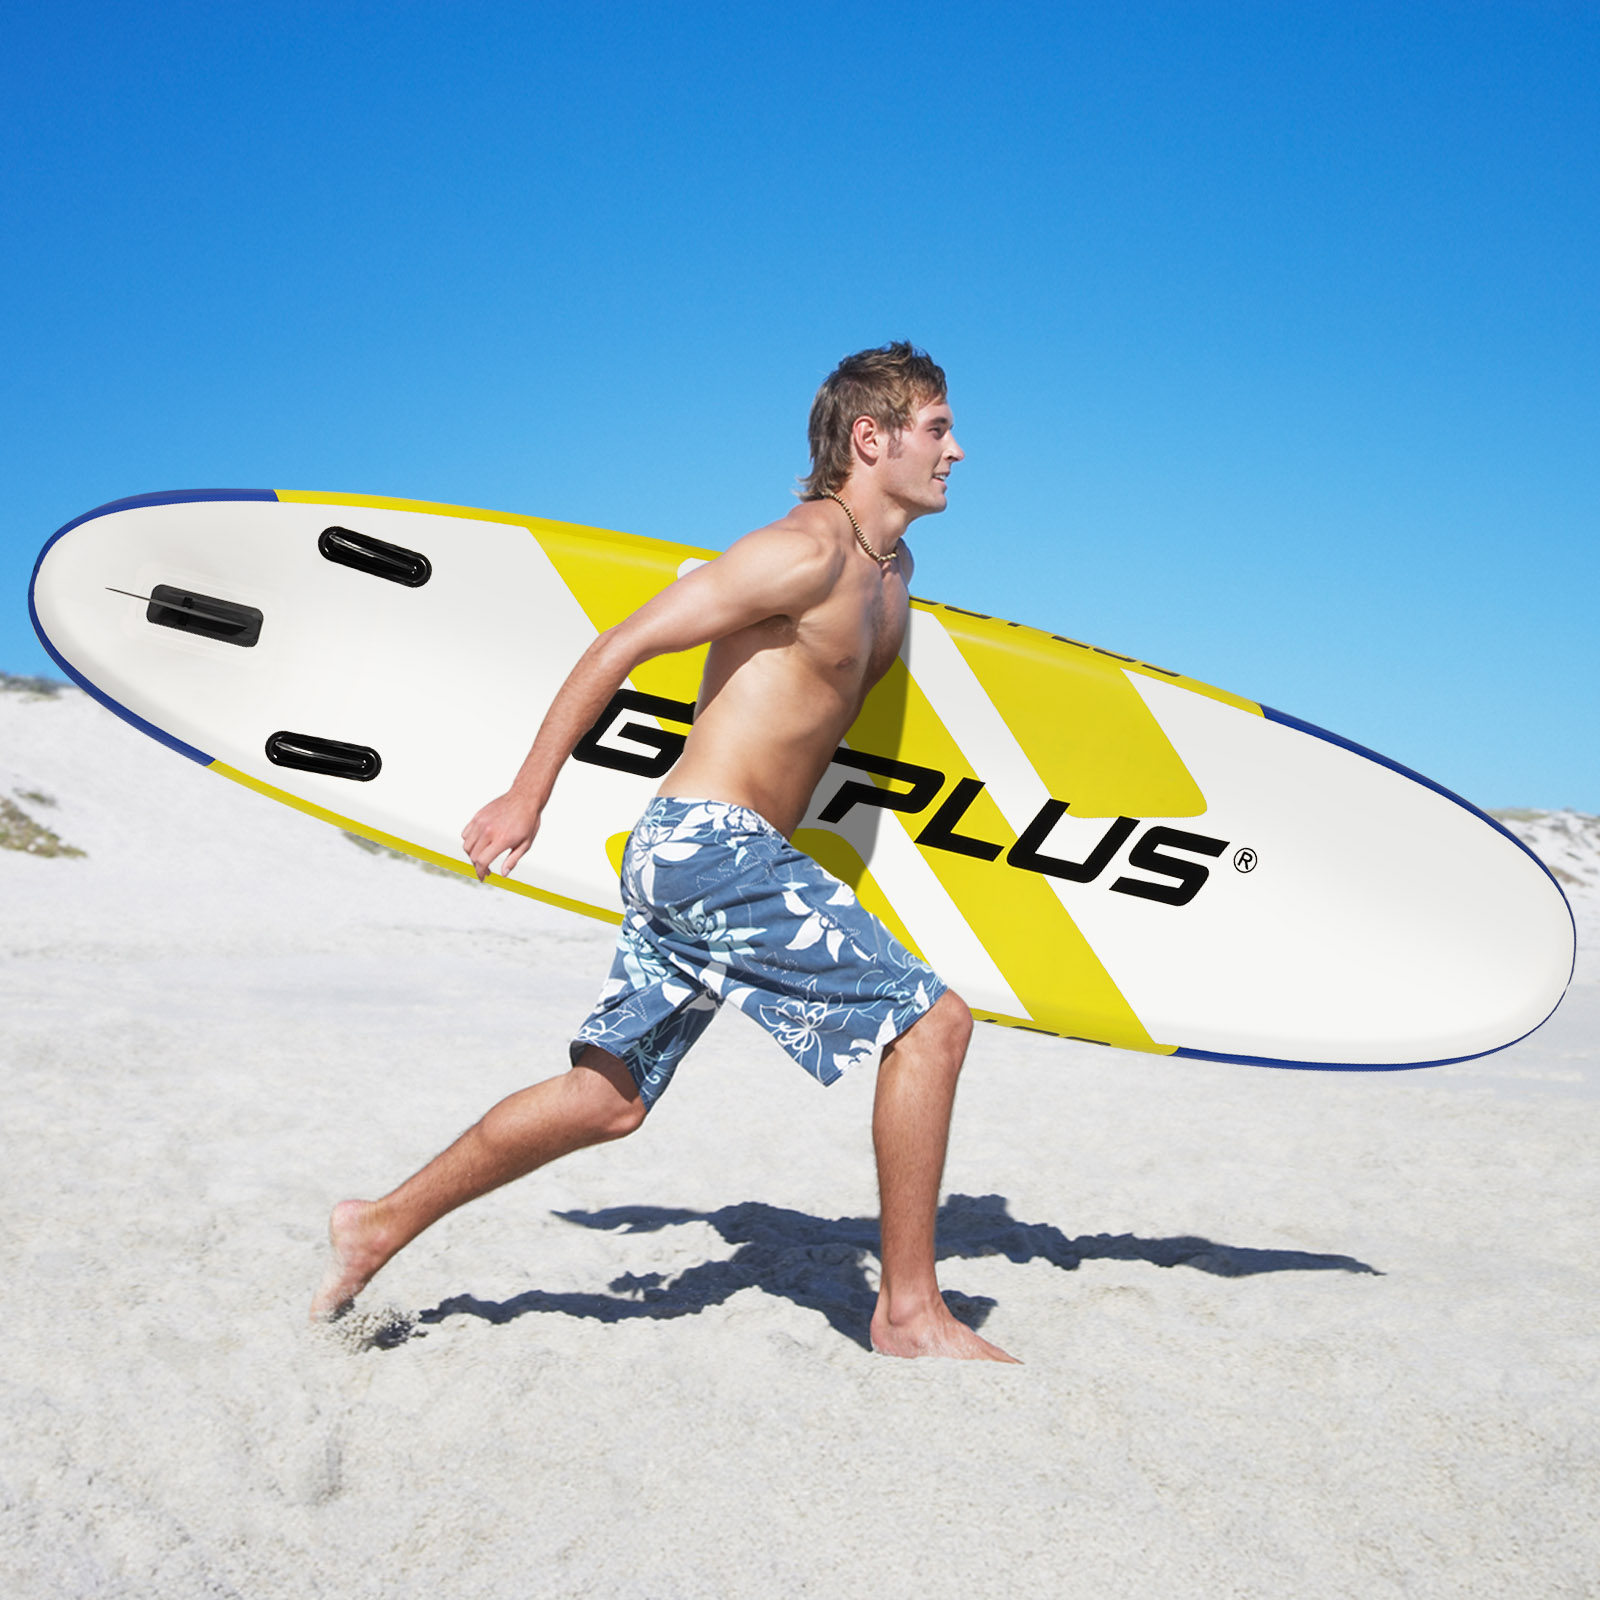 SUP Board Opblaasbaar Stand Up Paddle Board met Breed Gebied 305 x 76 x 15 cm Blauw + Geel + Wit